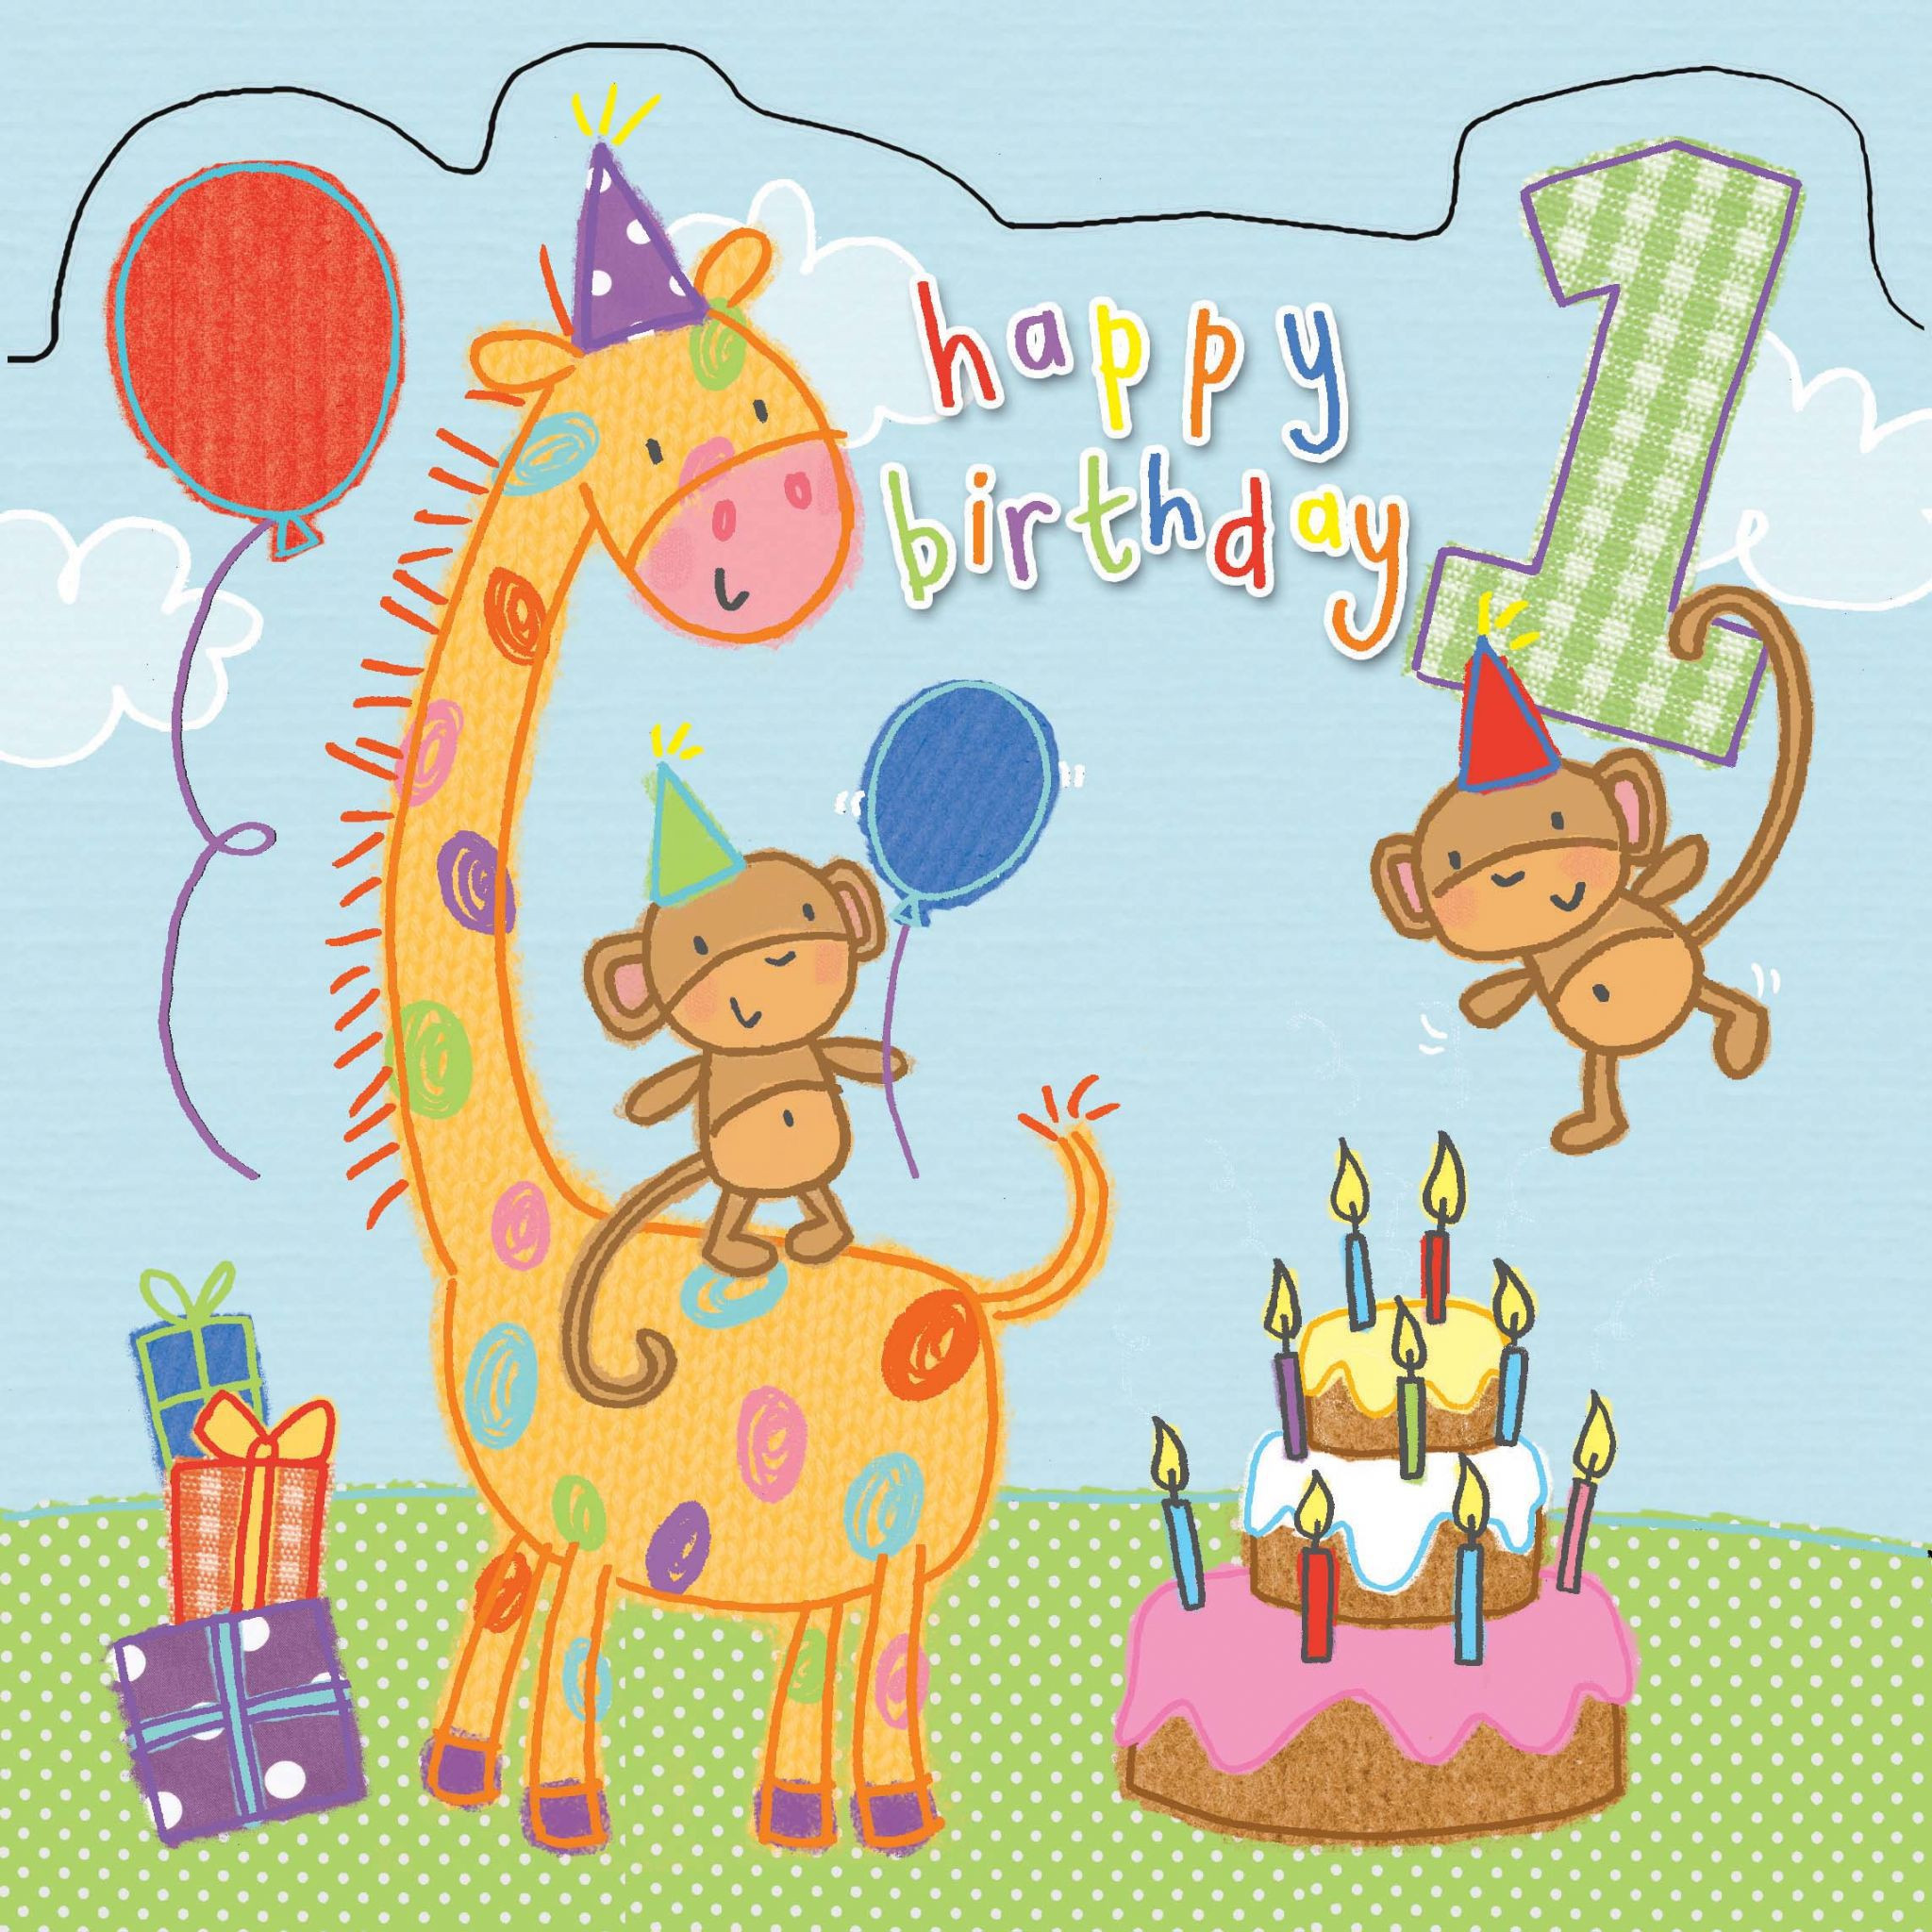 Geburtstagswünsche Für Kinder 10 Jahre
 Ideen Geburtstagskarte Kindergeburtstagskarte Kinder